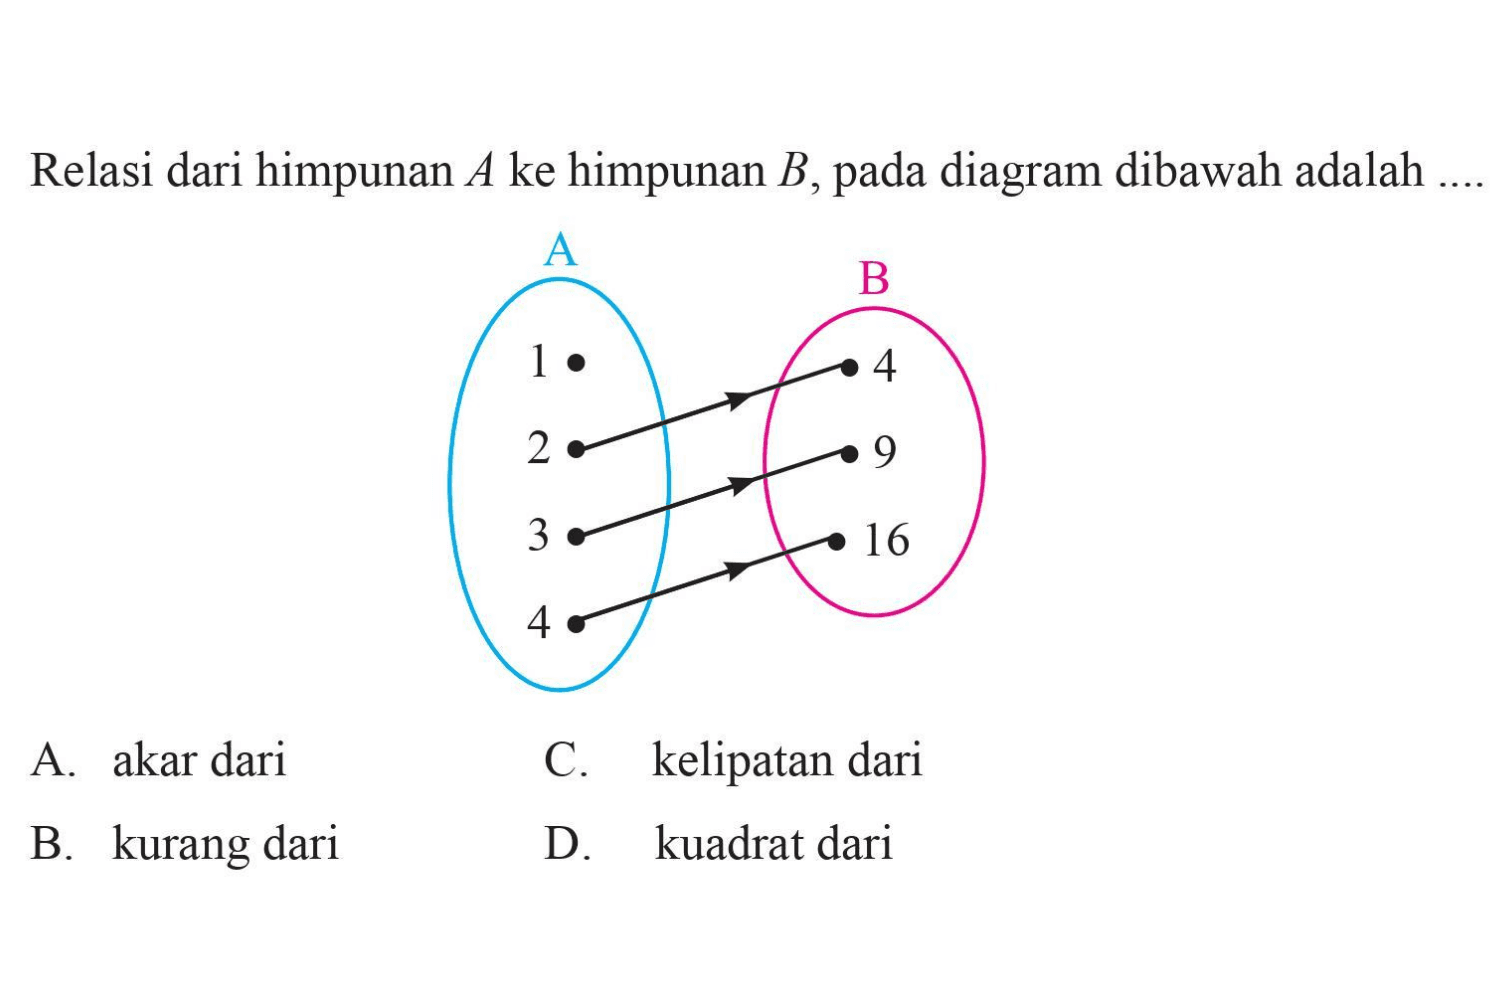 Relasi dari himpunan A ke himpunan B pada 
 diagram dibawah adalah ...
 A 1.2.3.4
 B. 4.9.16
 
 a. akar dari
 b. kurang dari
 c. kelipatan dari
 d. kuadrat dari